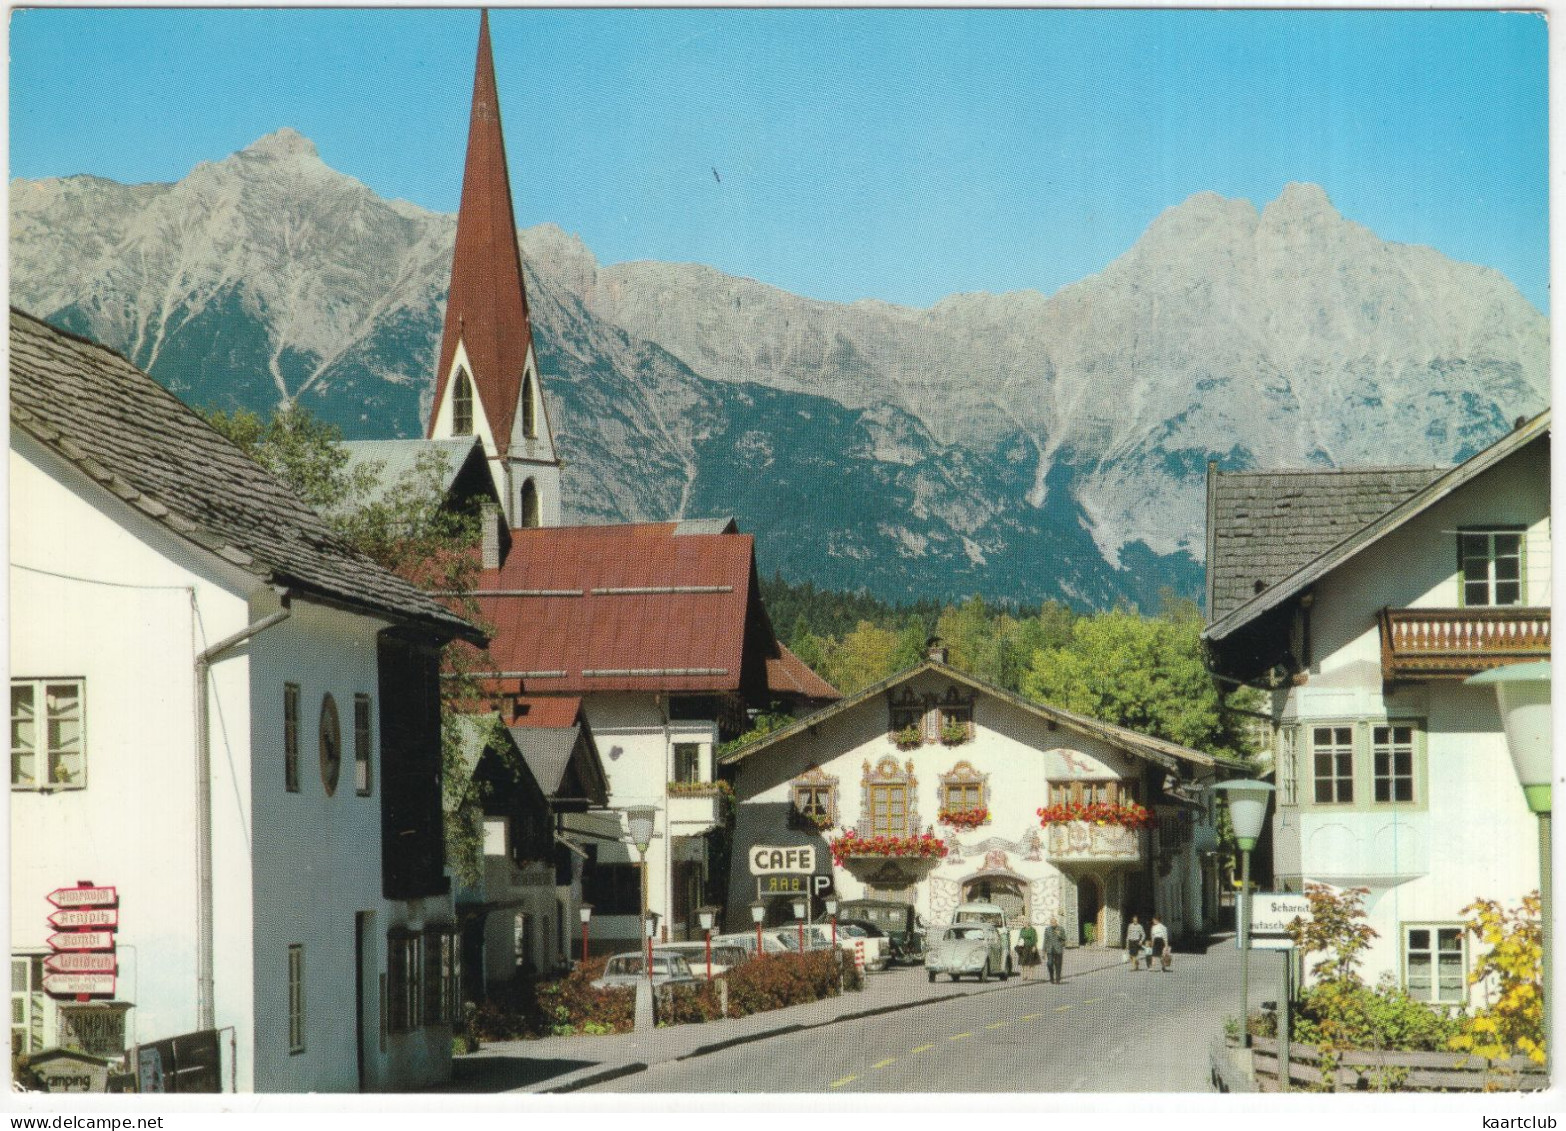 Seefeld In Tirol: LAND ROVER, VW 1200 KÄFER/COX, 'BULLI' BUS, PEUGEOT 404 - Café, Dorfstrasse - (Tirol, Austria) - PKW